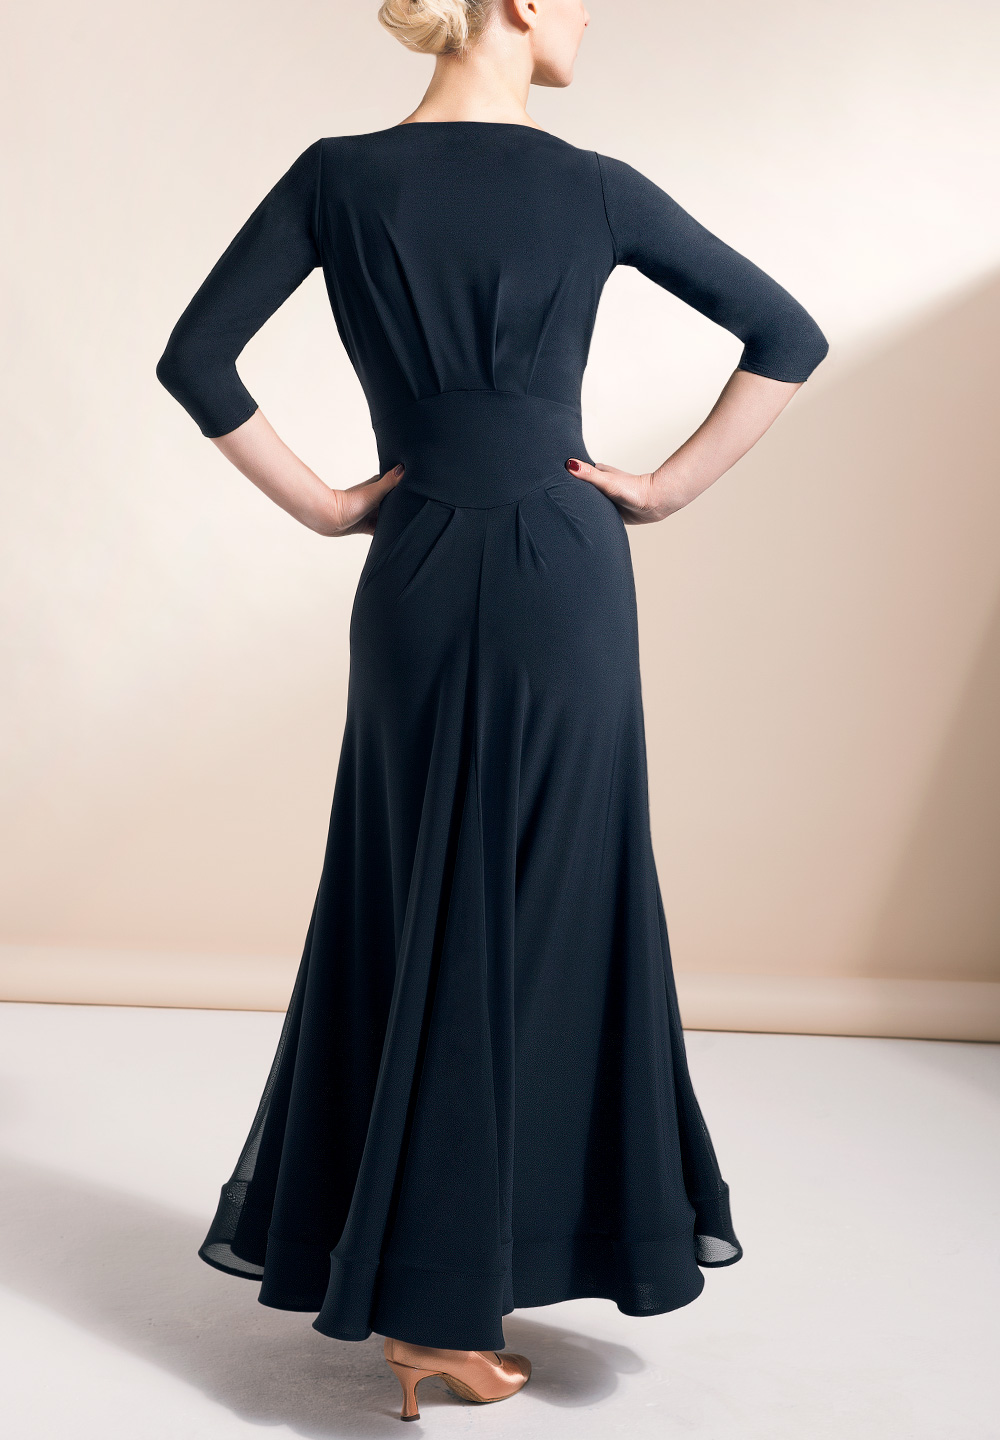 Chrisanne Clover Imperial Ballroom Dress | Dresses